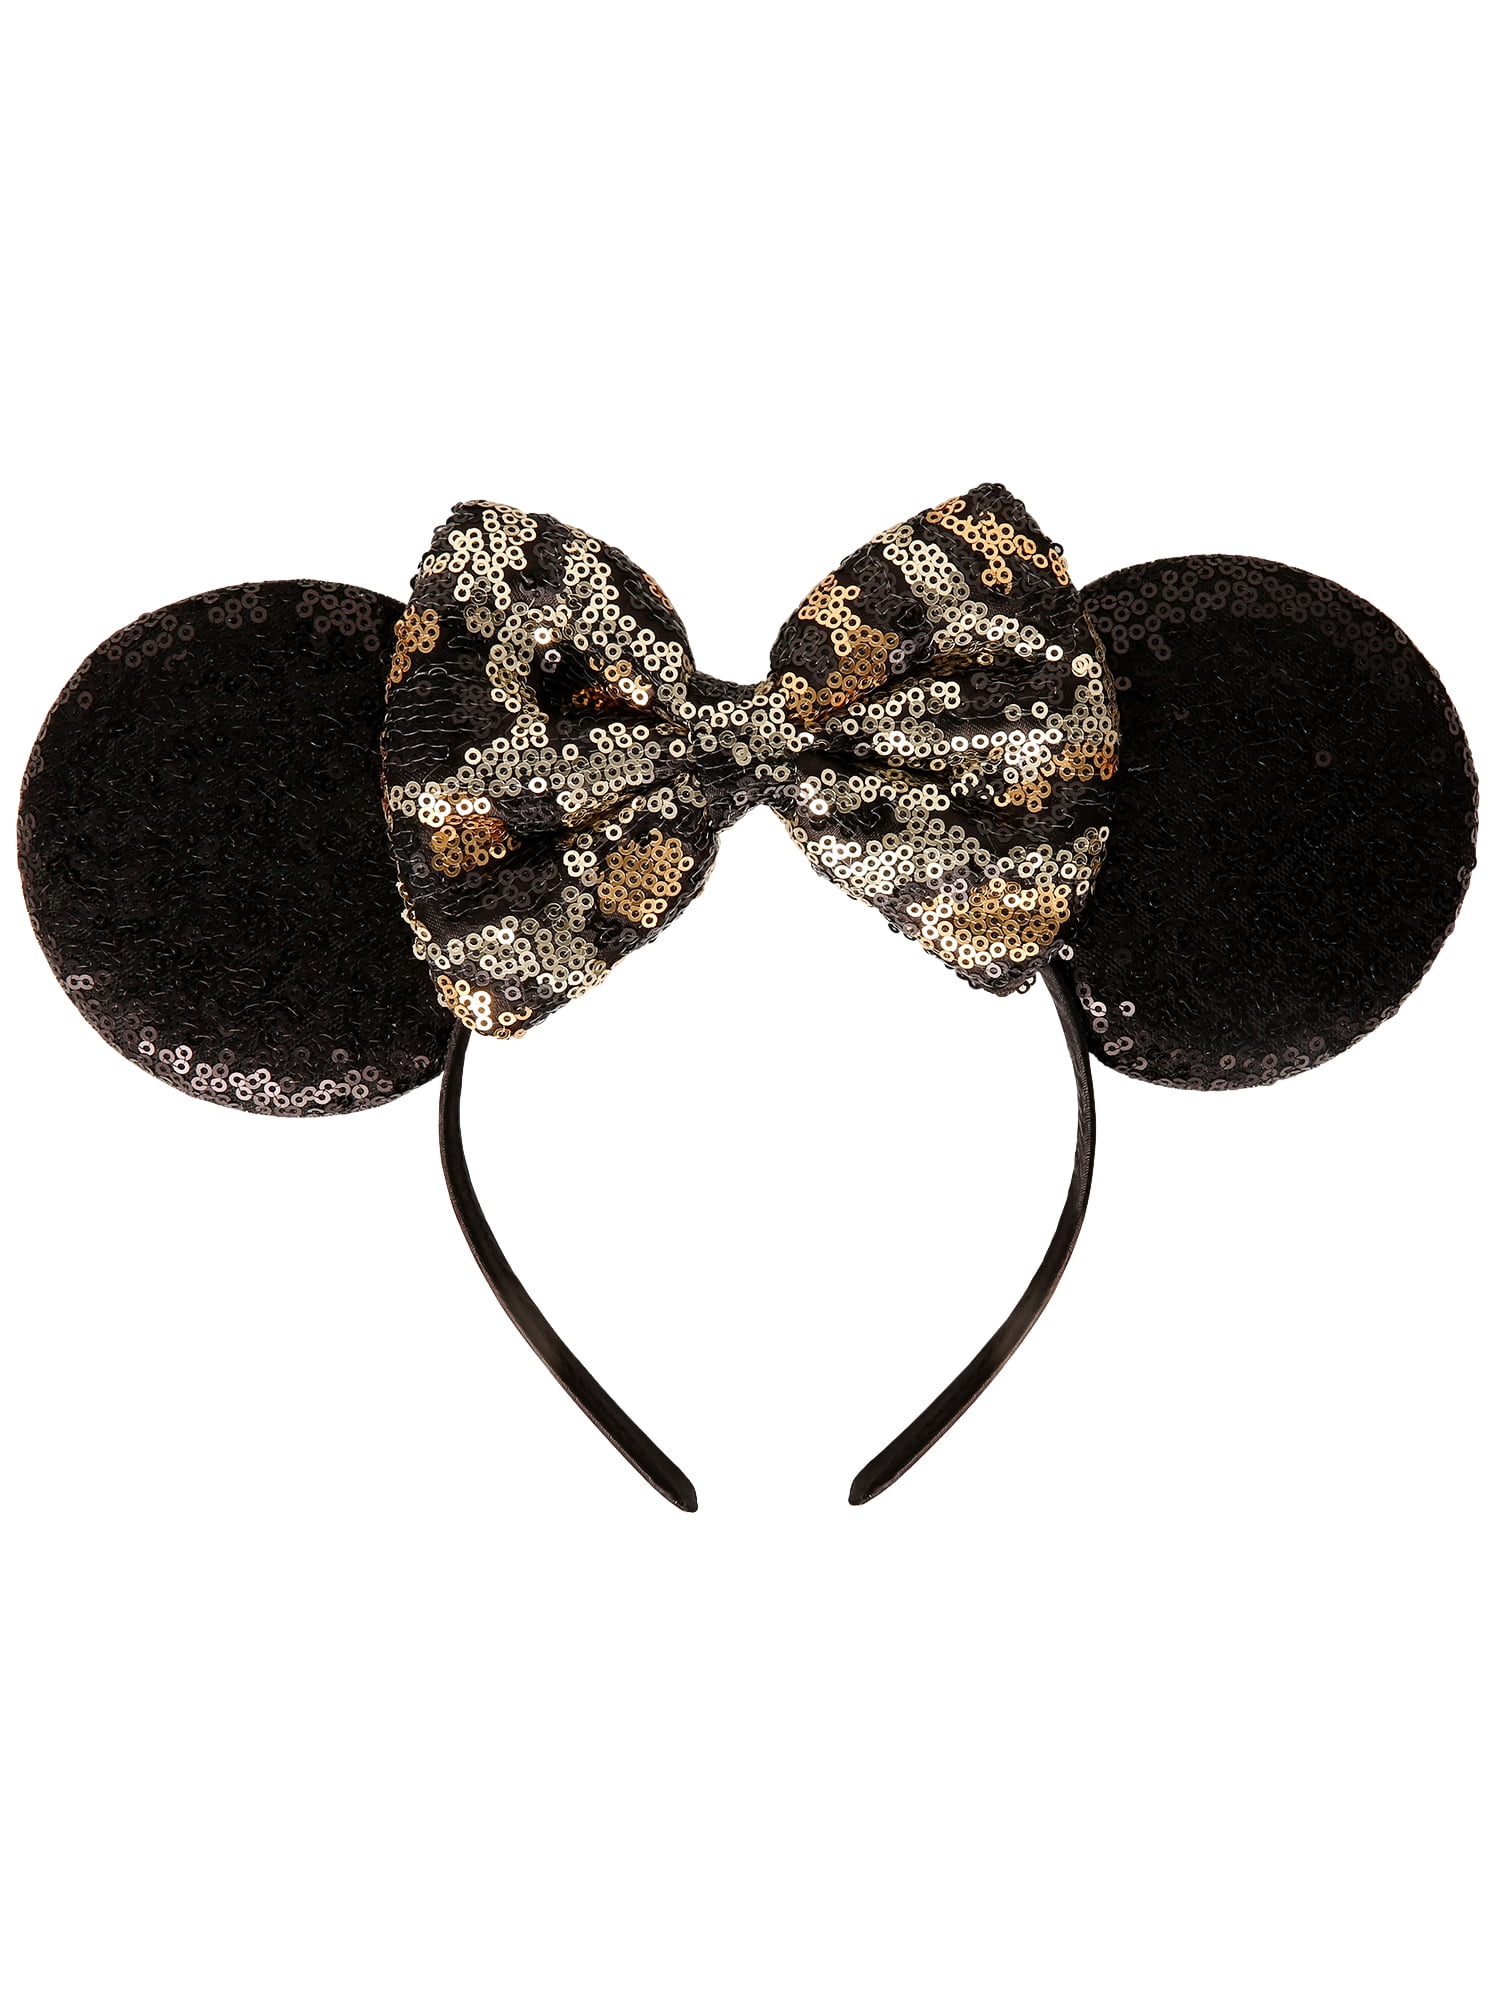 Disney Minnie Mouse Fashion Cheetah Sequin Bow Headband